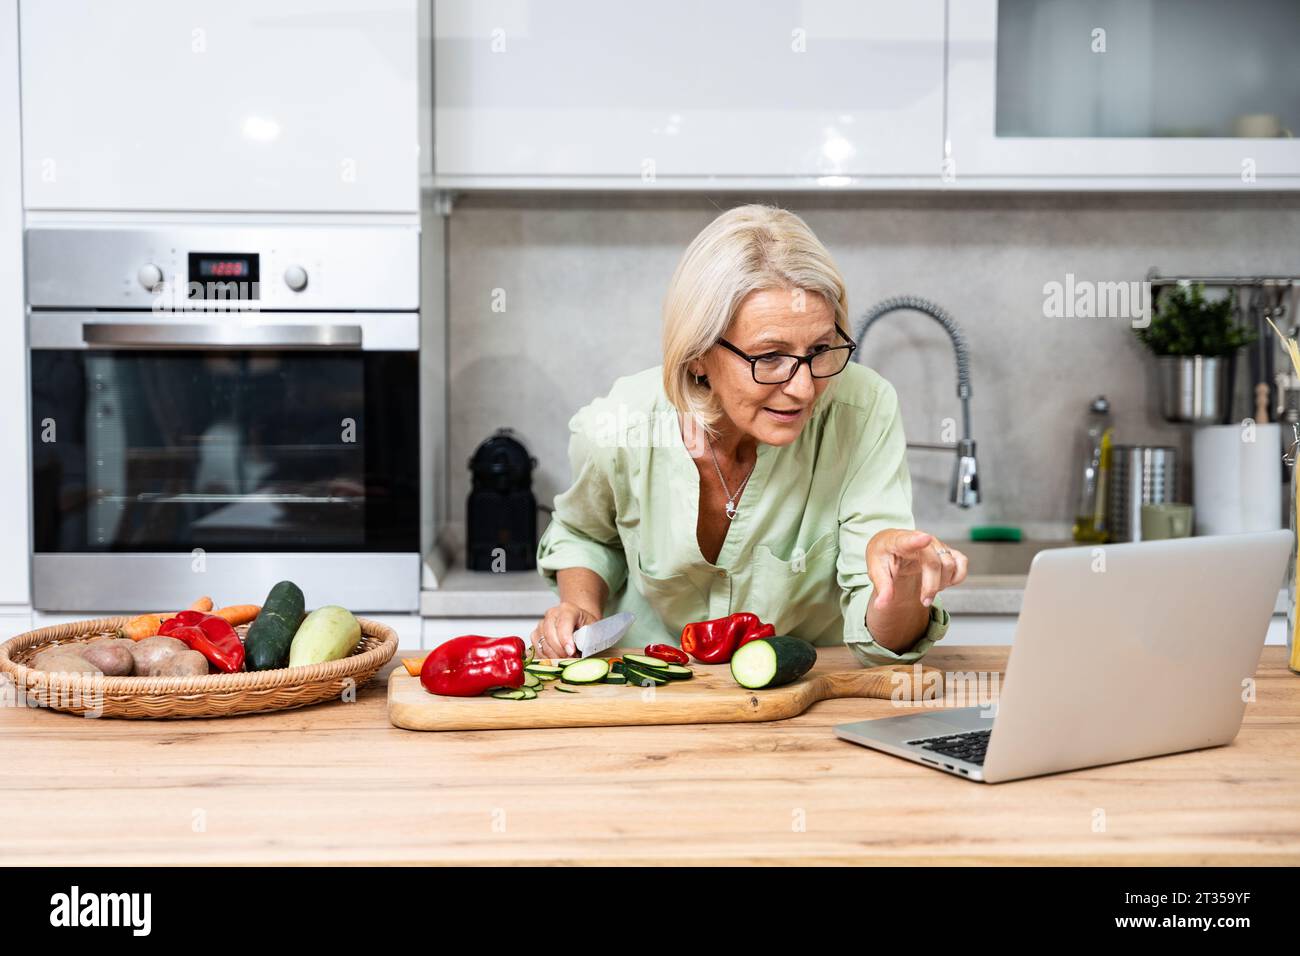 Femme senior à la recherche de recettes de cuisine en ligne sur son ordinateur portable. La femme retraitée cuisinent des légumes comme nourriture végétalienne debout dans l'ingrédient de coupe de cuisine Banque D'Images